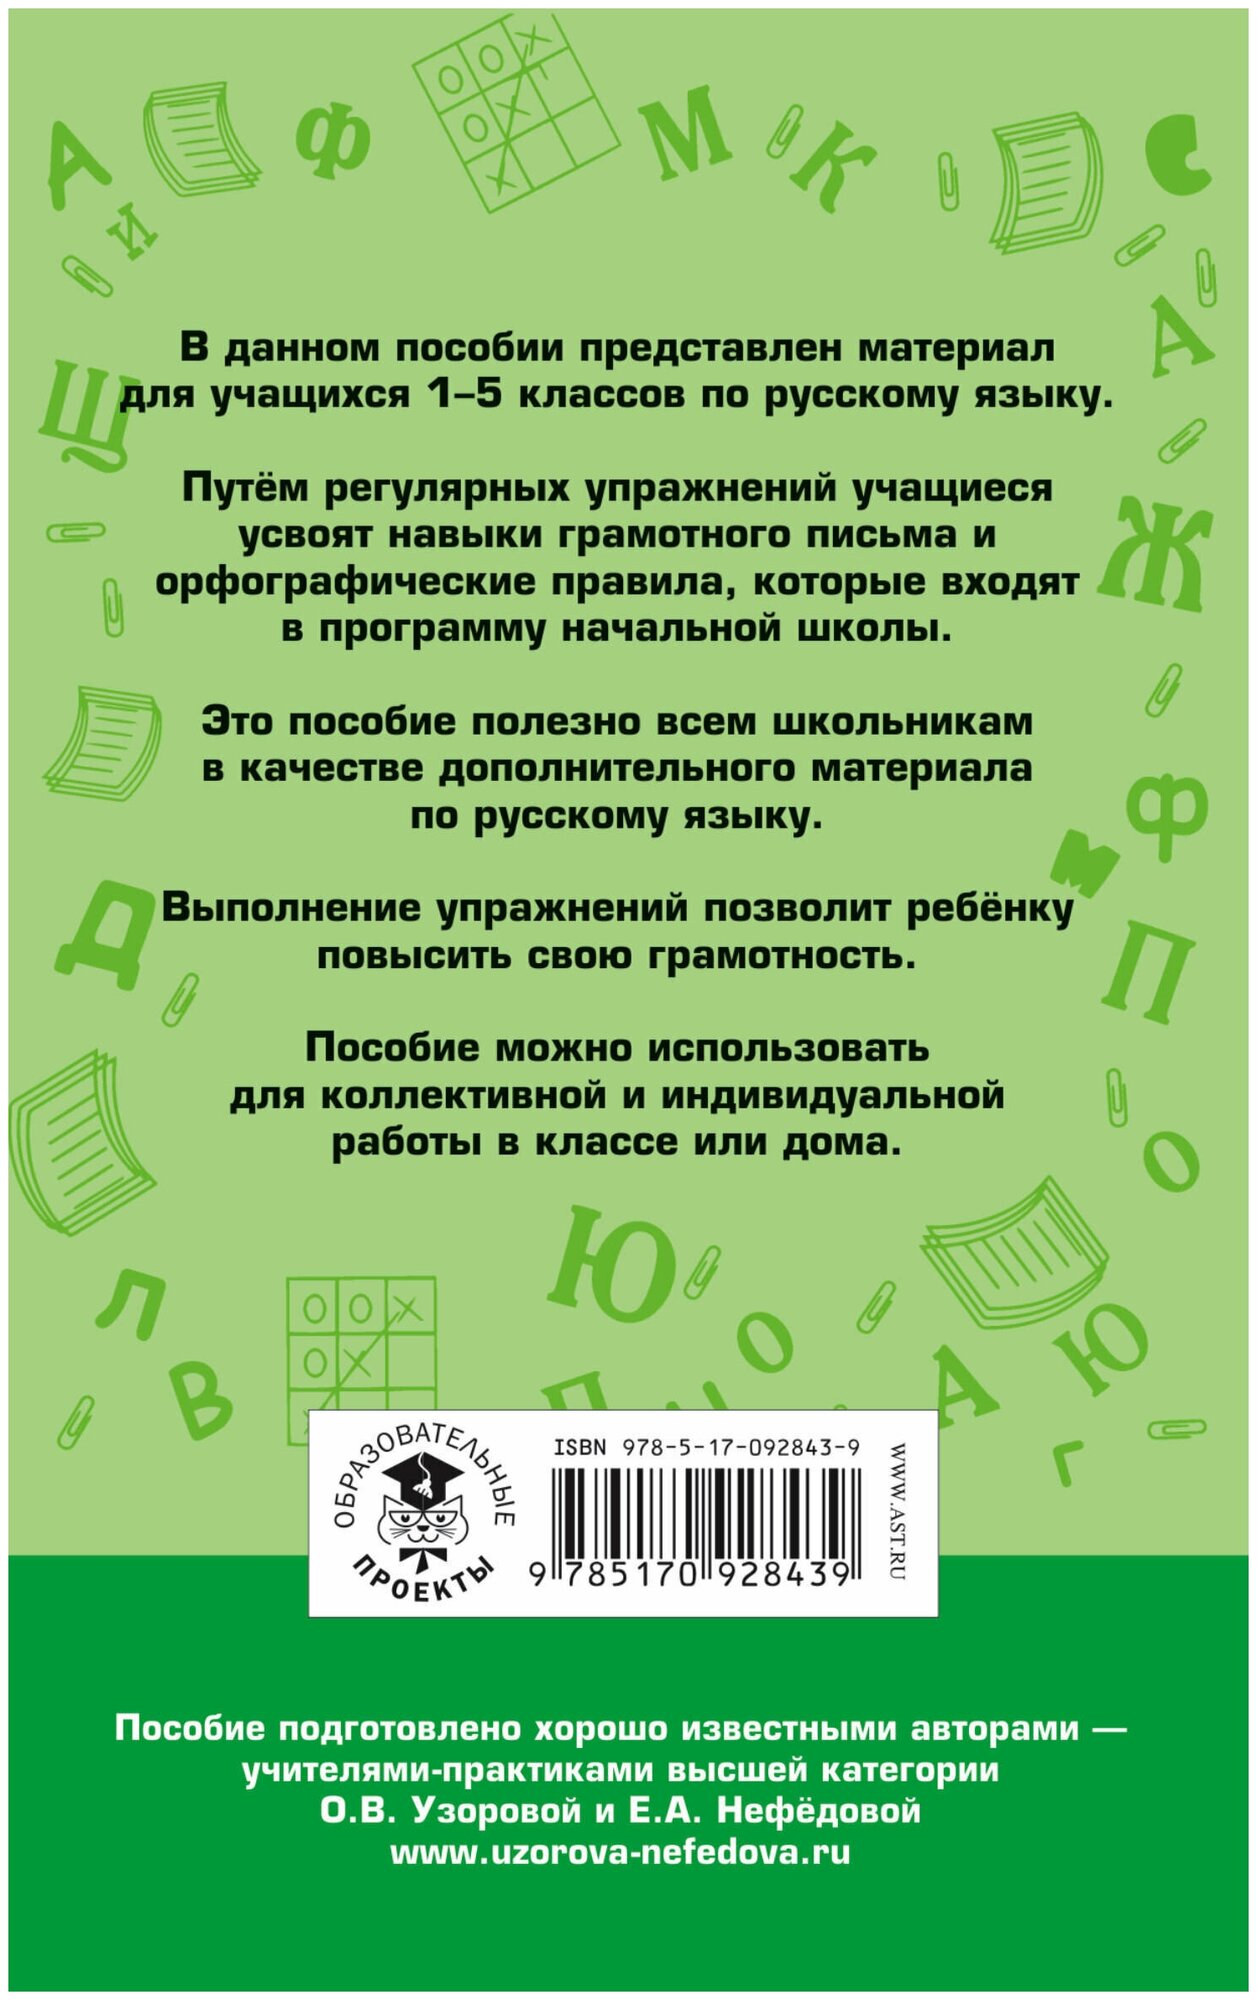 350 правил и упражнений по русскому языку. 1-5 классы - фото №4